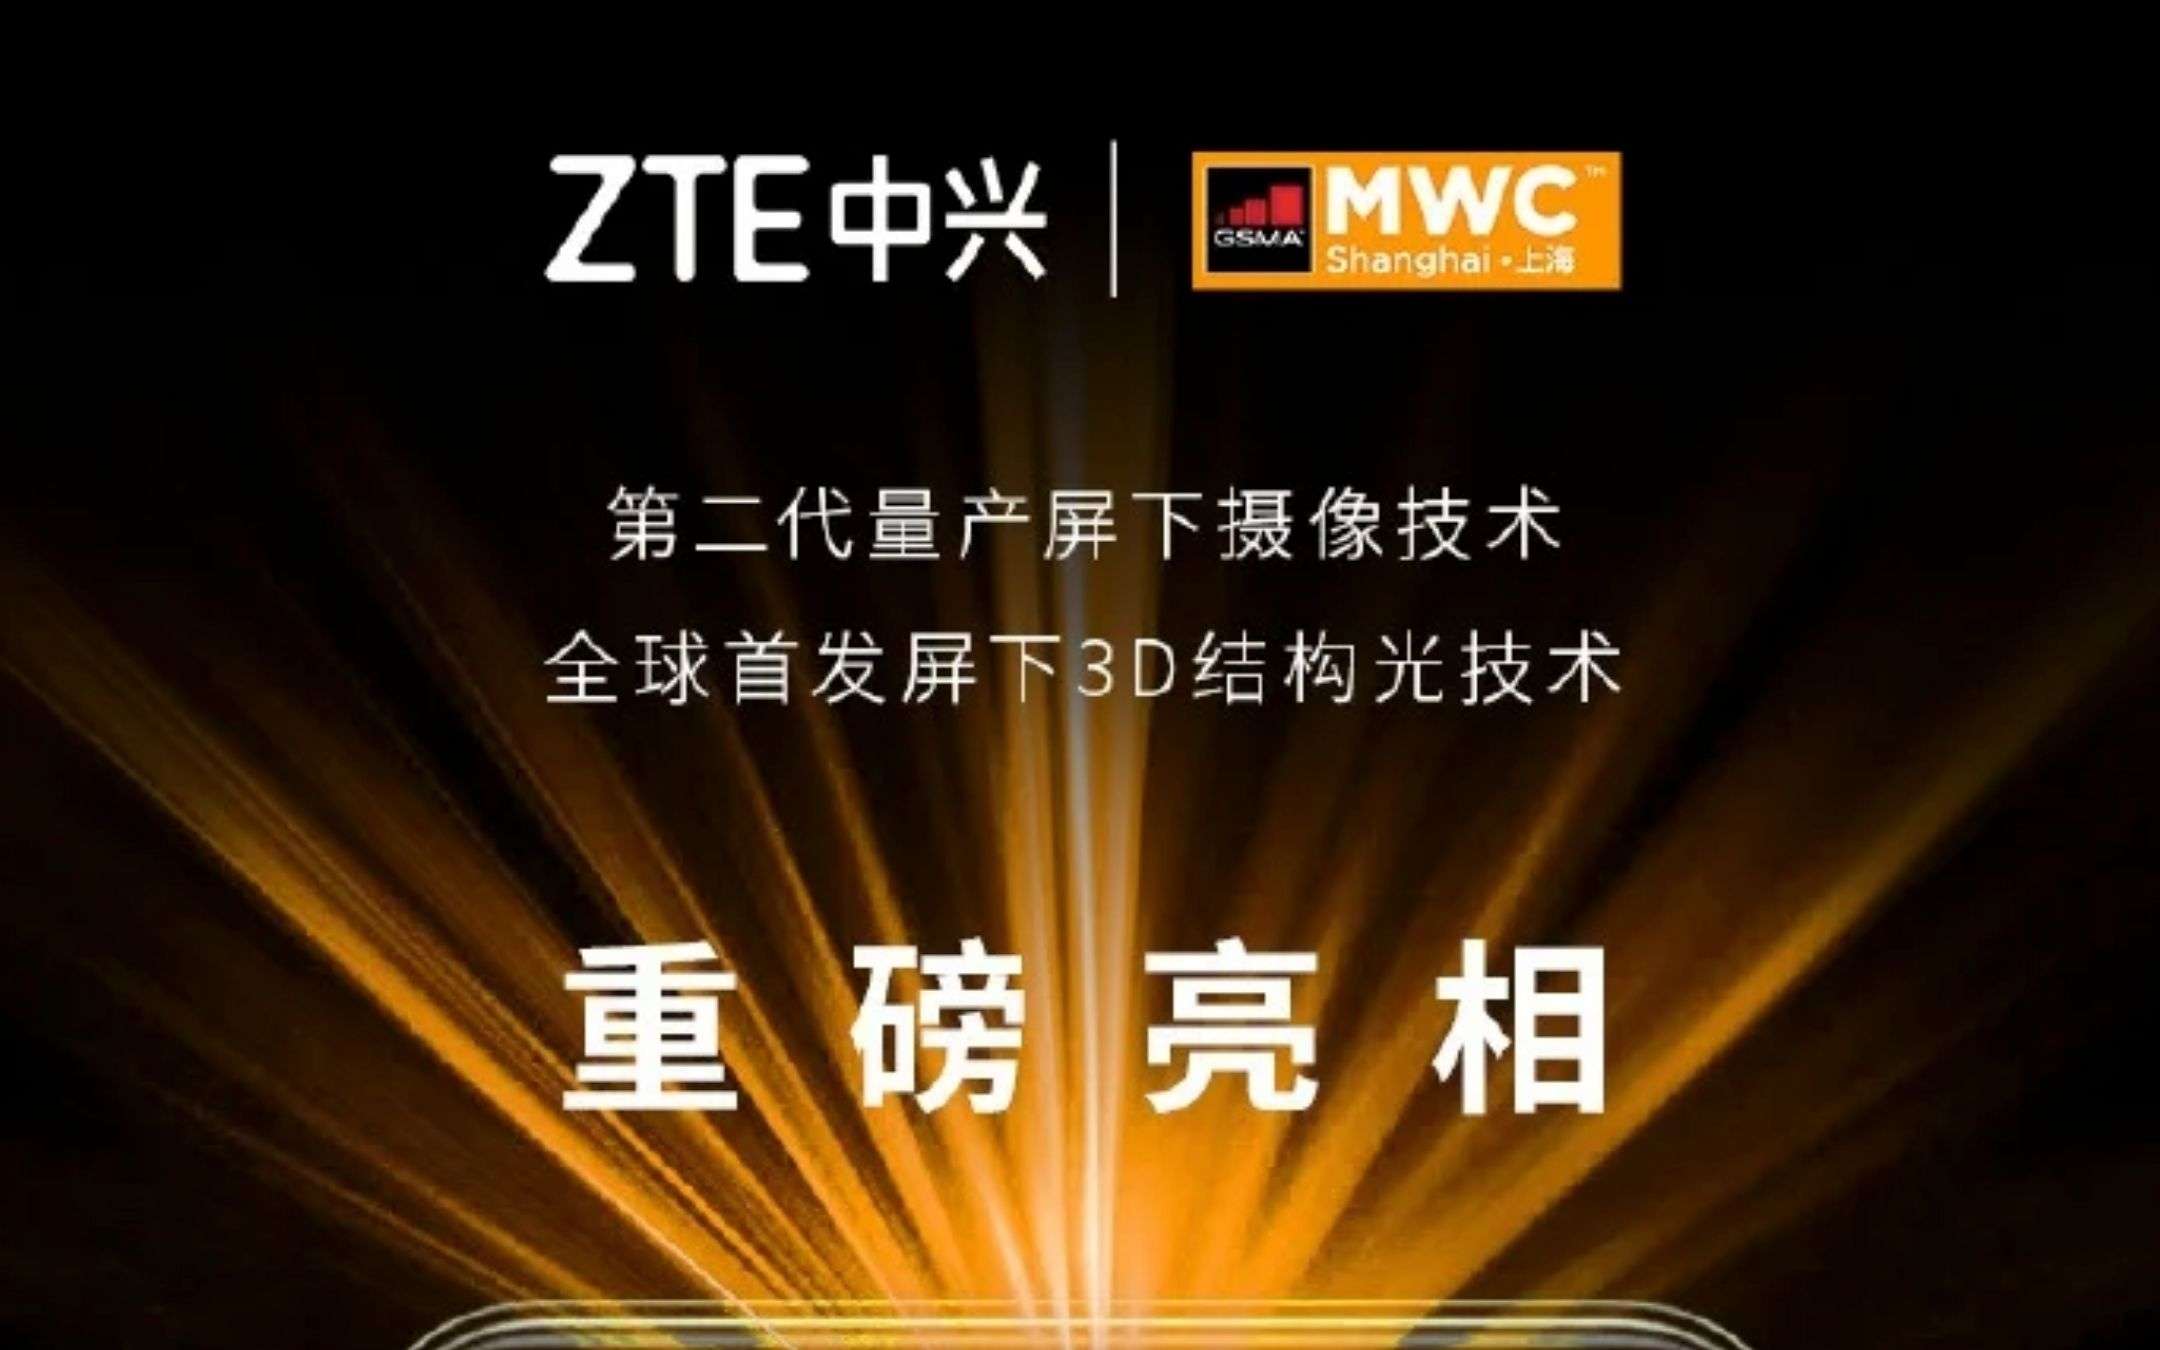 ZTE: le nuove selfiecam svelate al MWC di Shangai